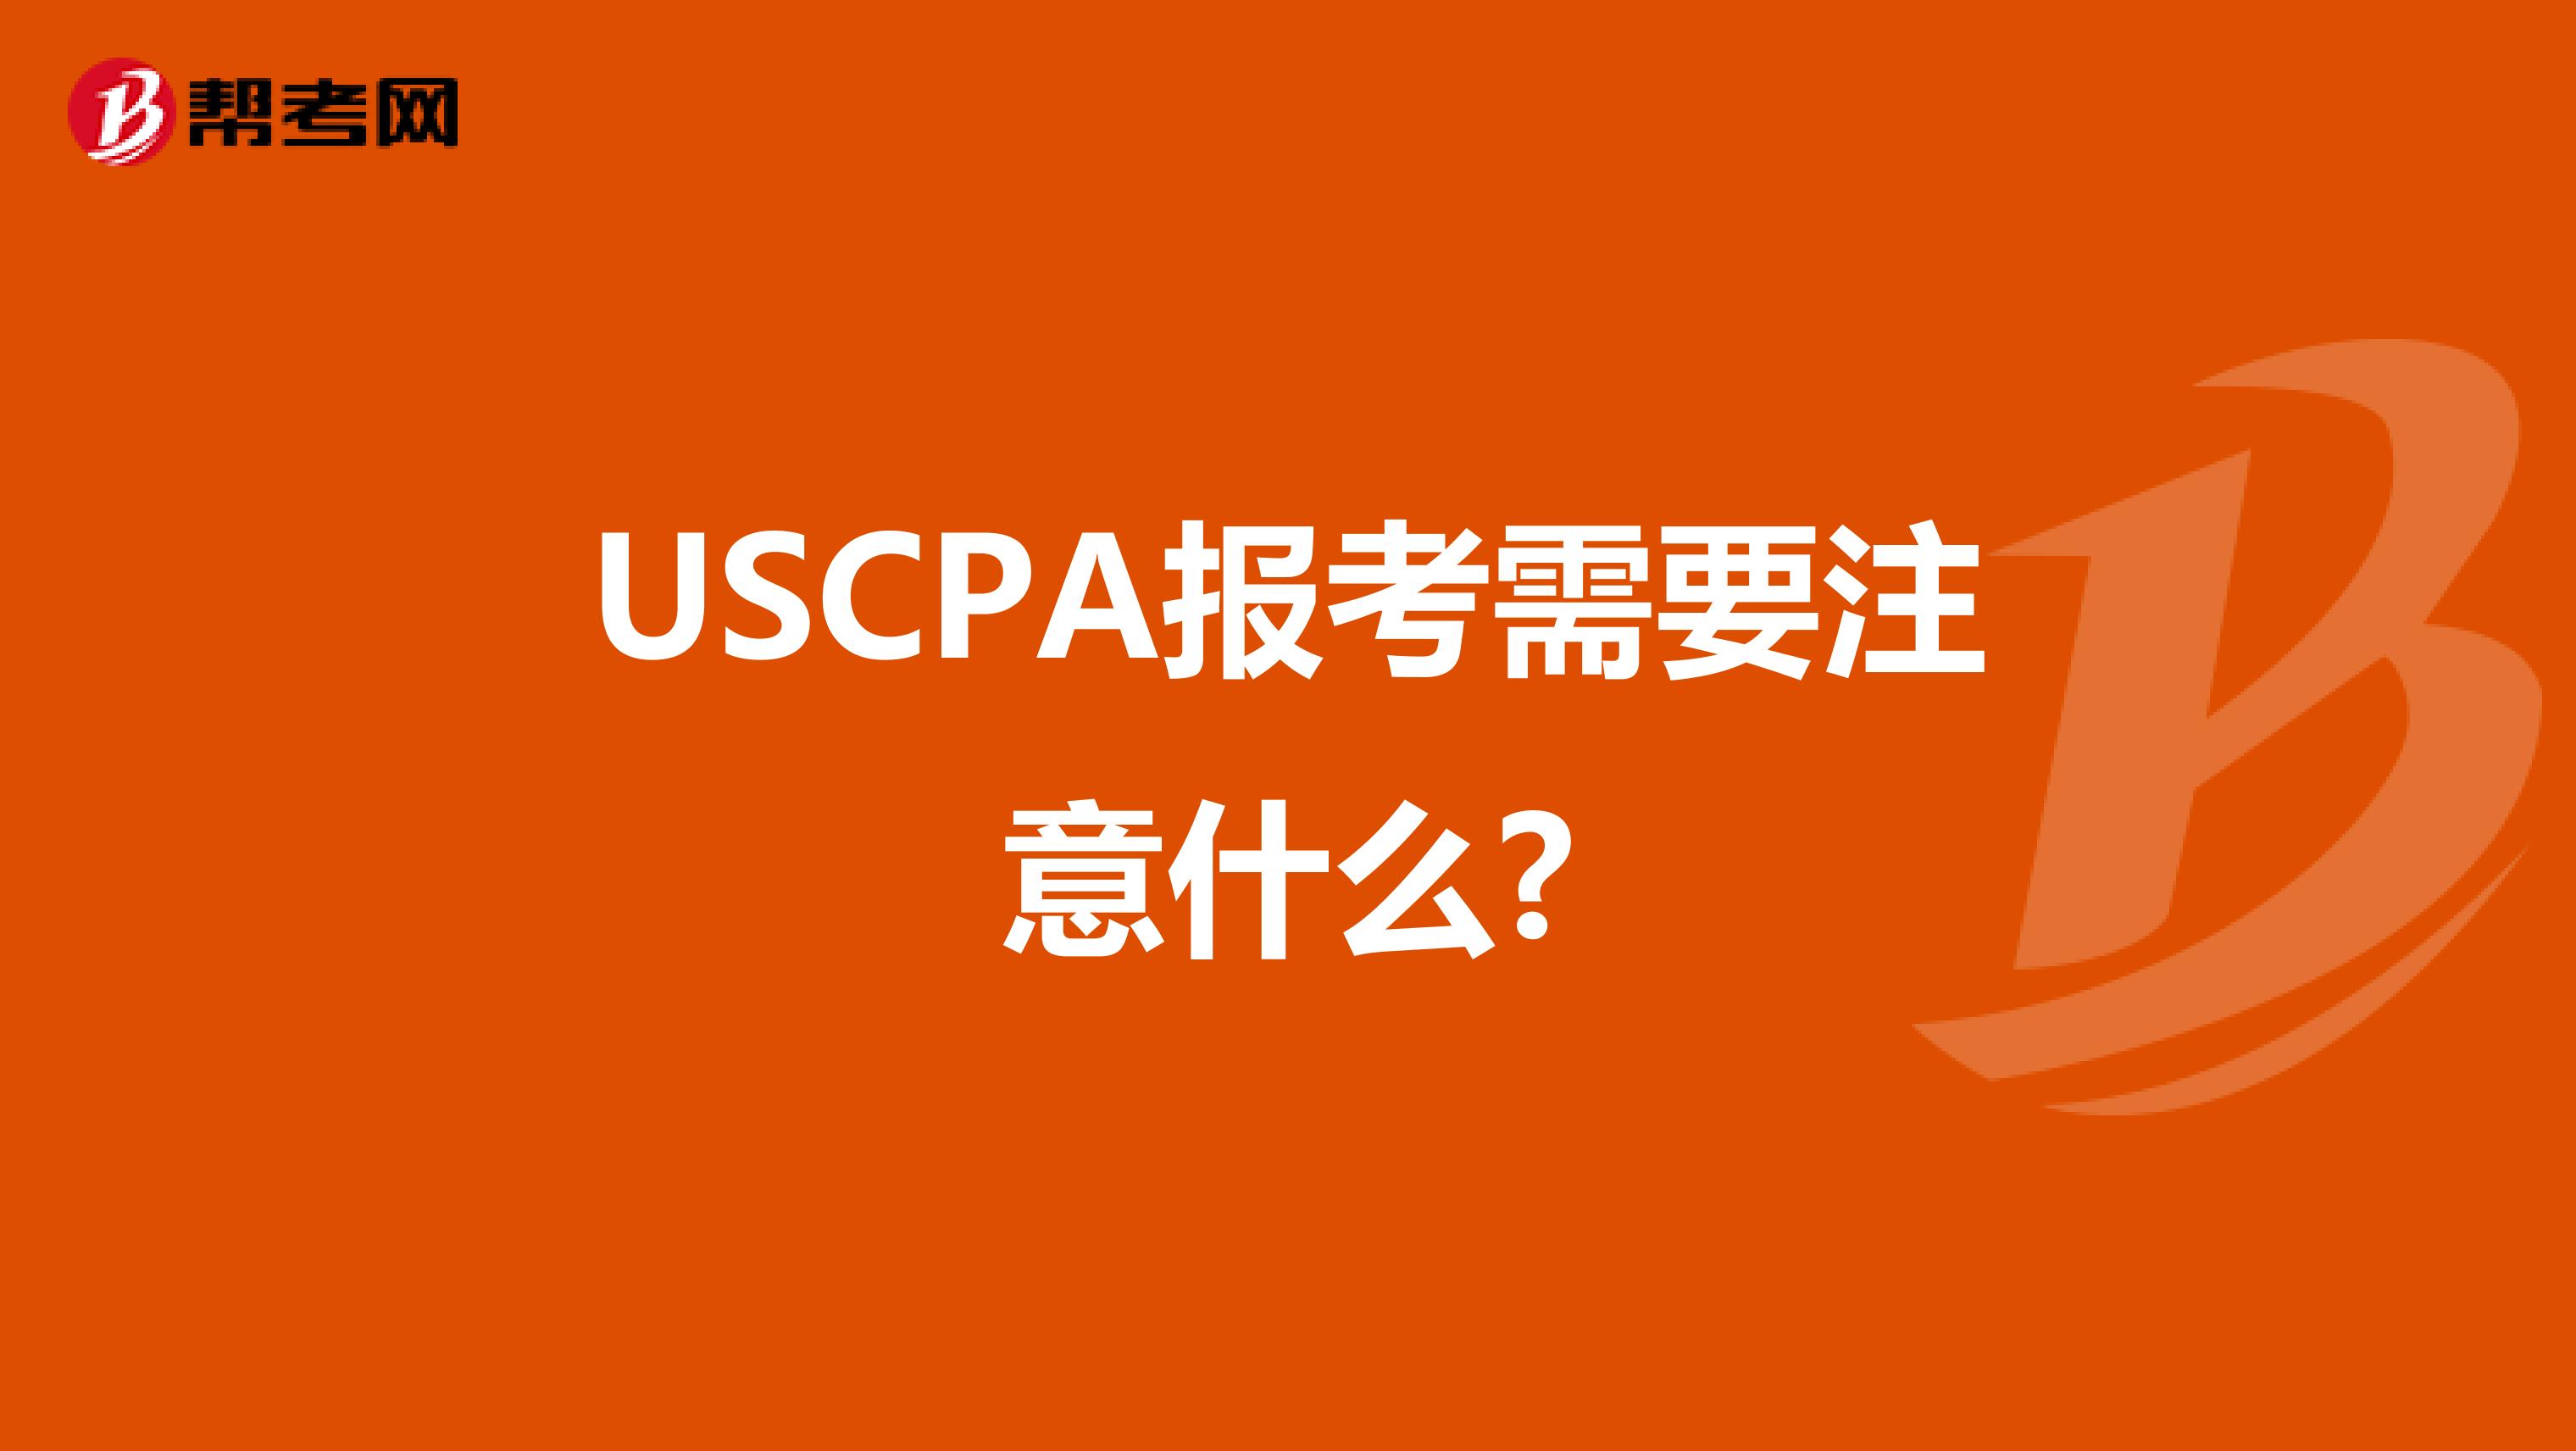 USCPA报考需要注意什么?